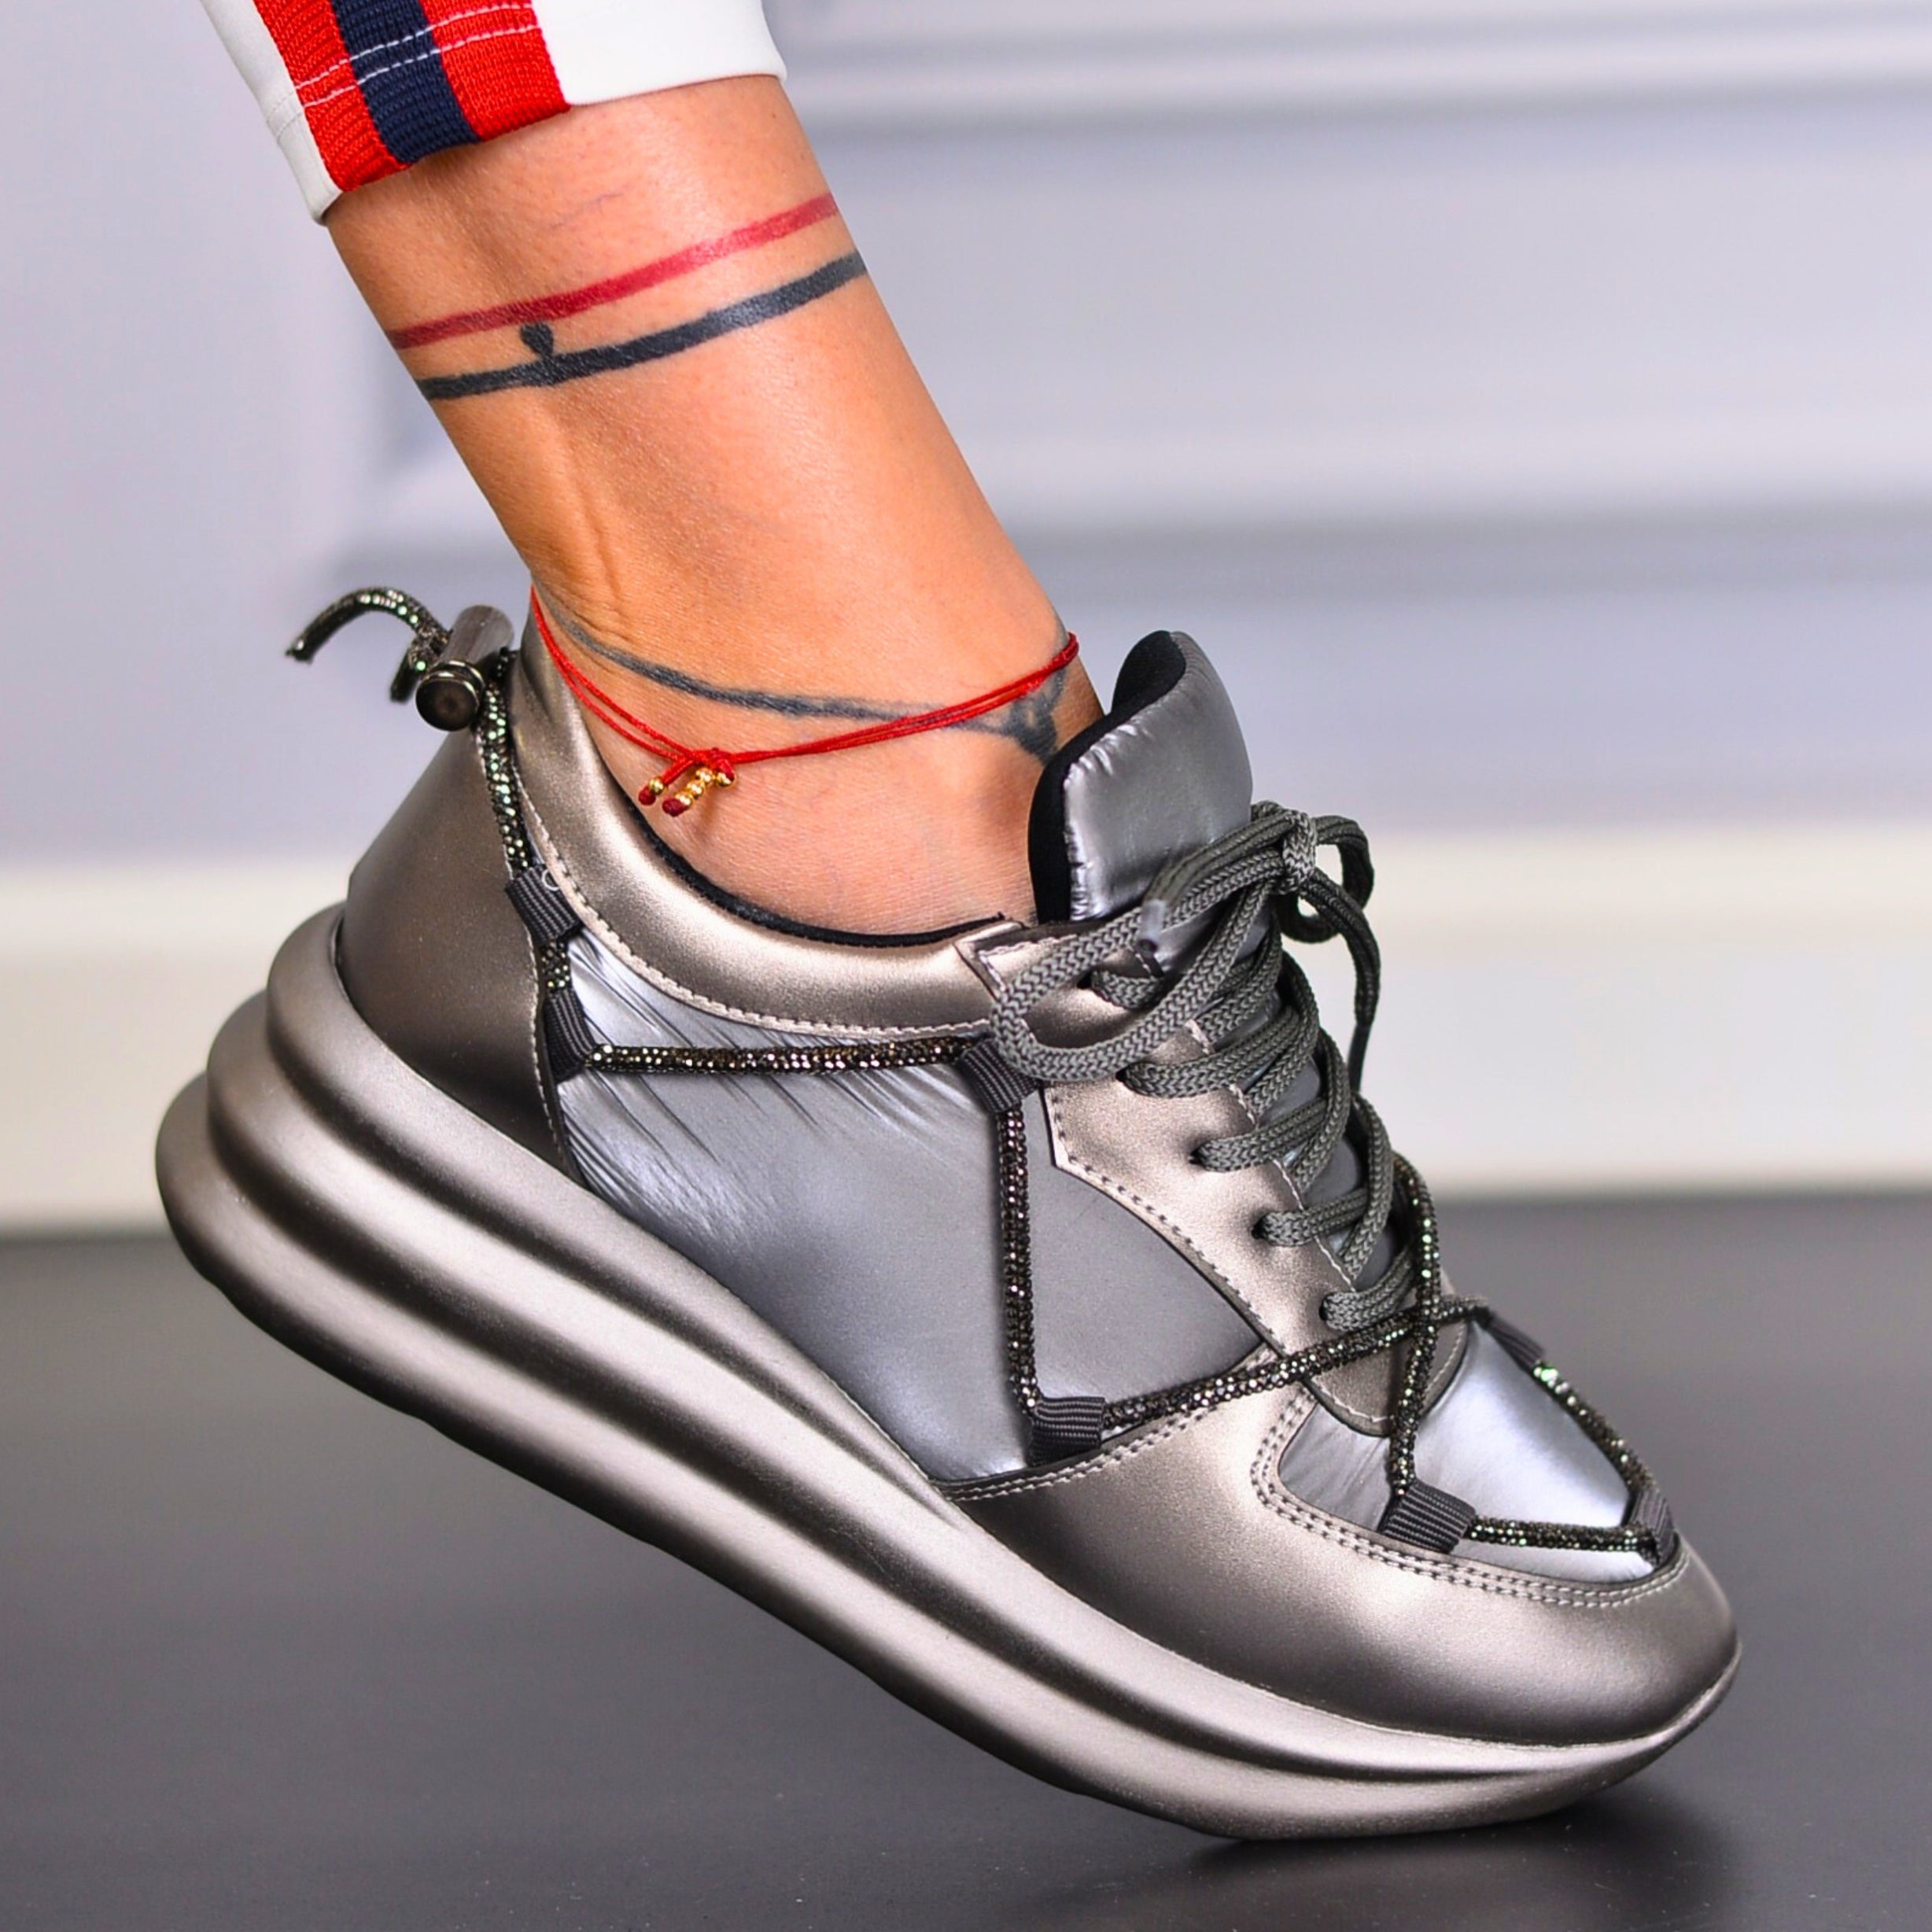 Pantofi Sport Dama Iza Argintiu Din Piele Eco Si Material Impermeabil